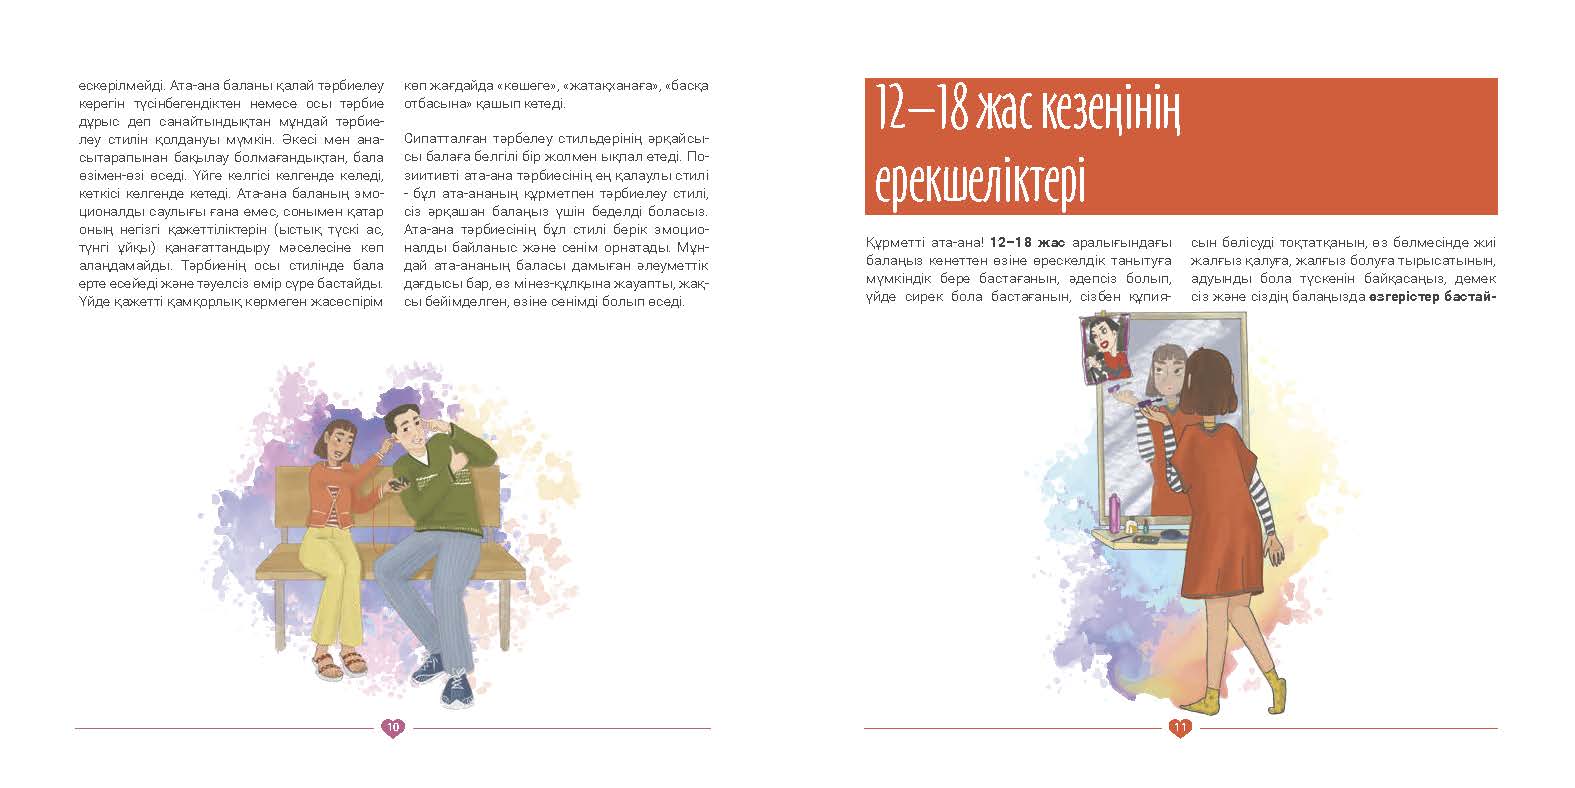 EVAC brochure KAZ (6).jpg